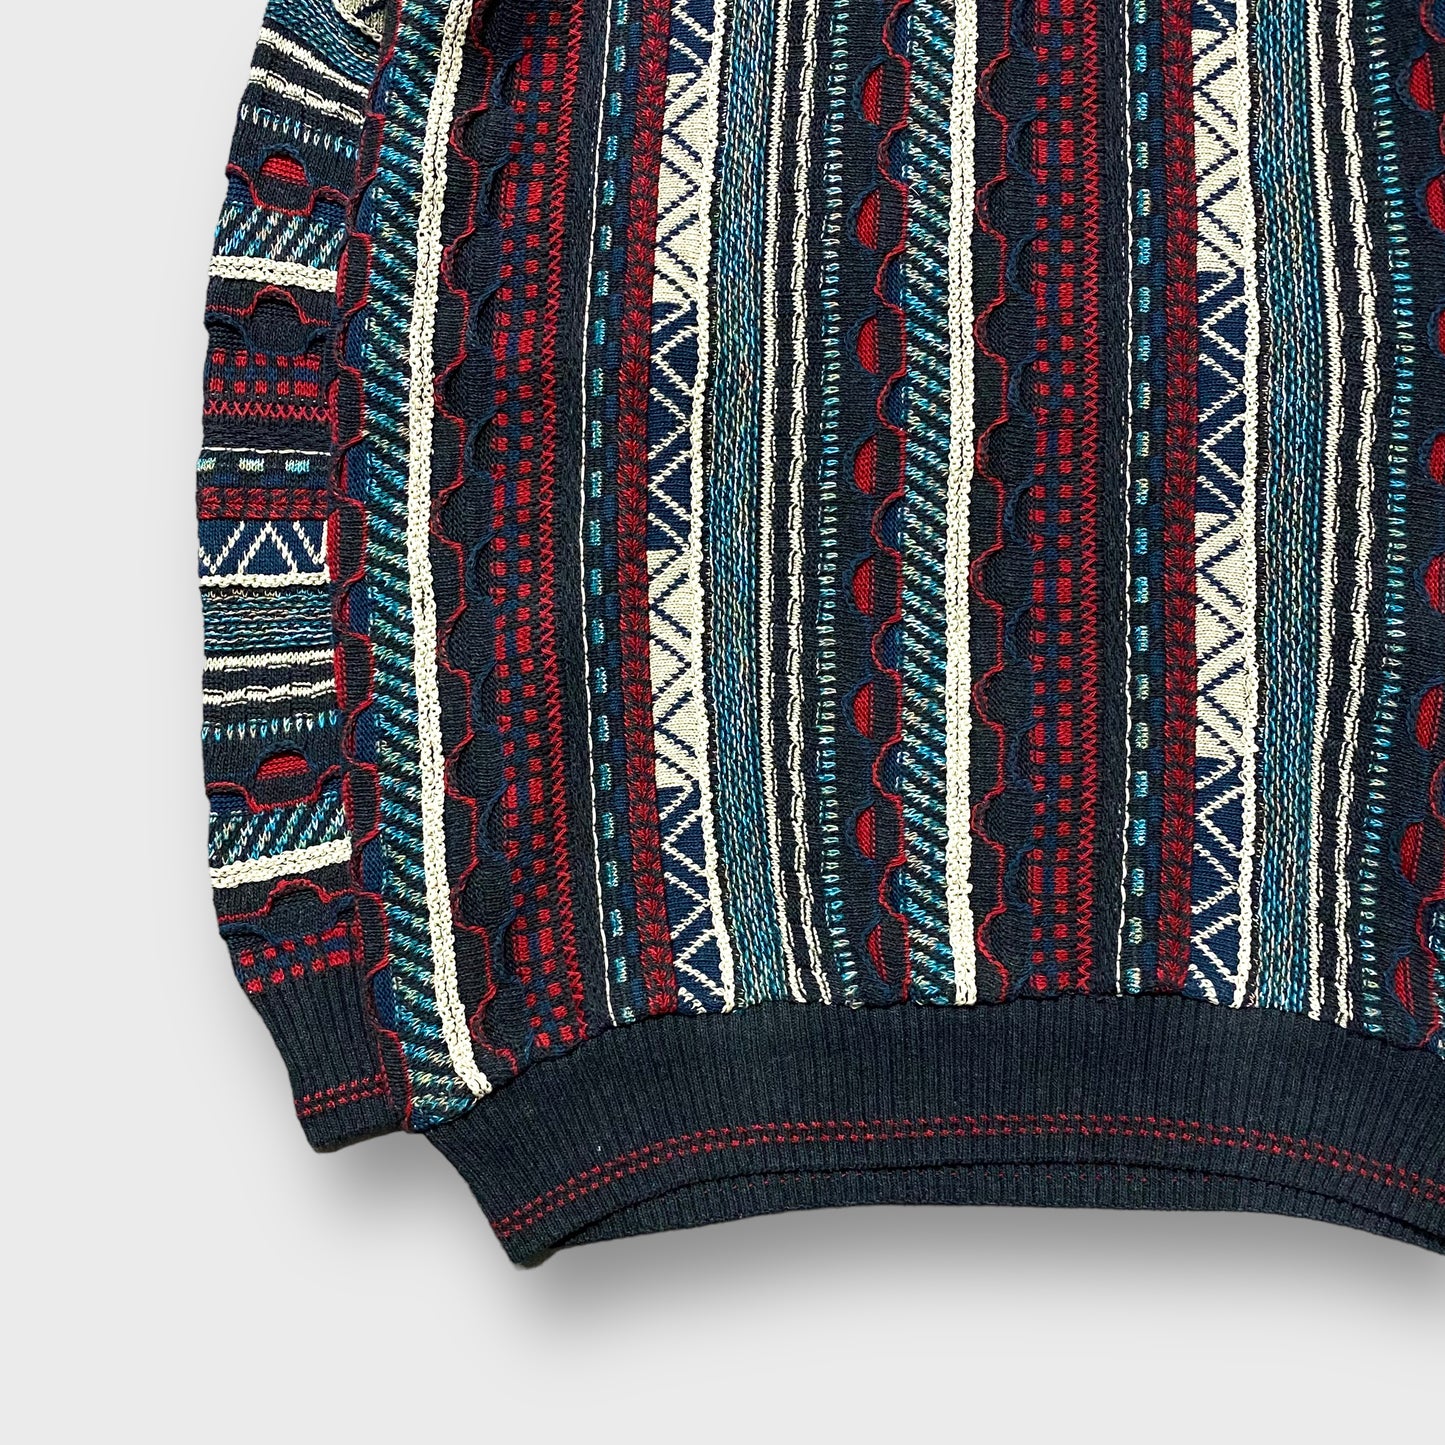 Stripe pattern 3D knit sweater